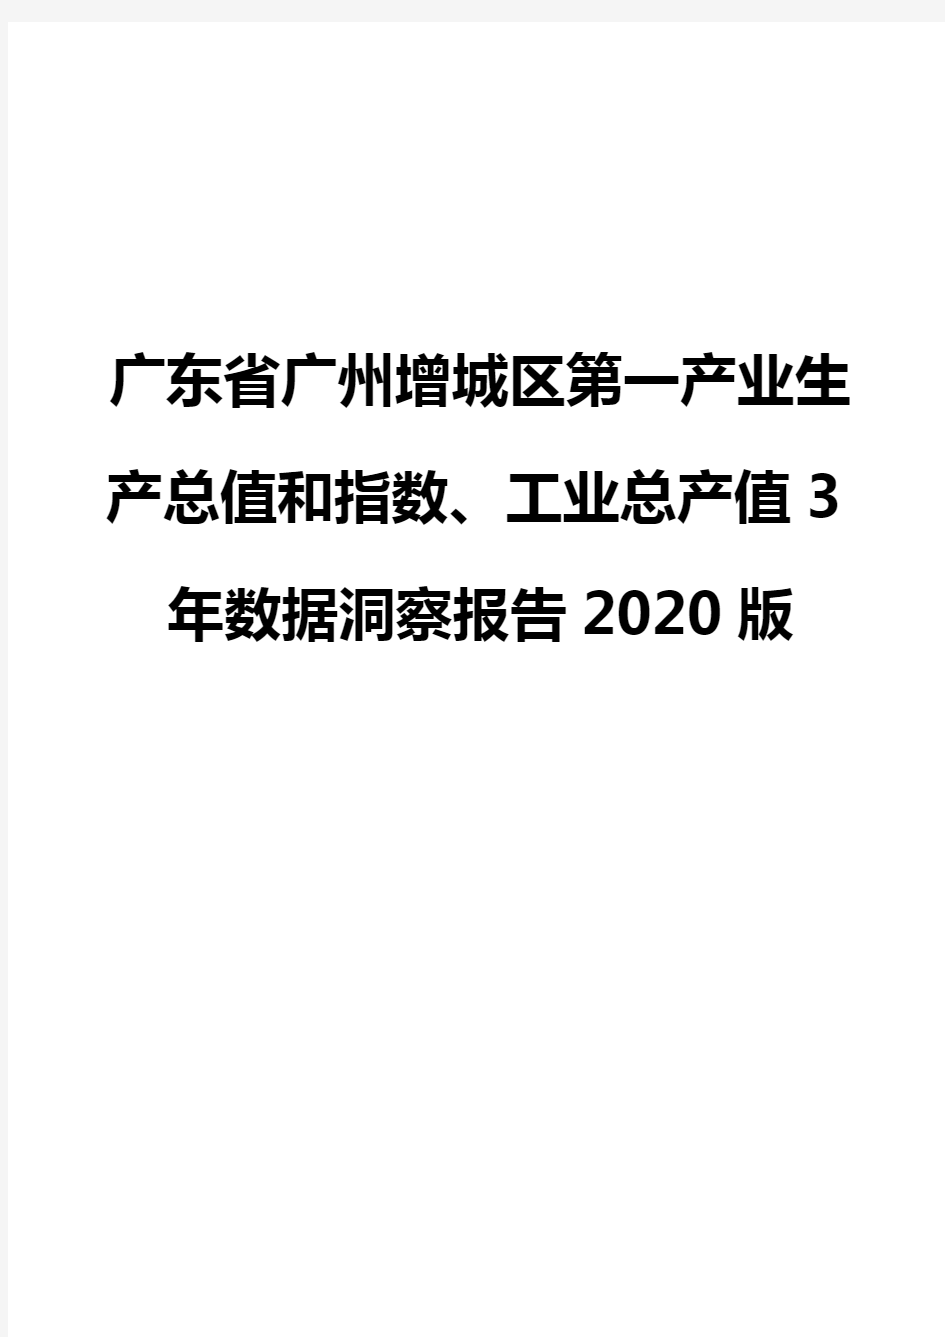 广东省广州增城区第一产业生产总值和指数、工业总产值3年数据洞察报告2020版